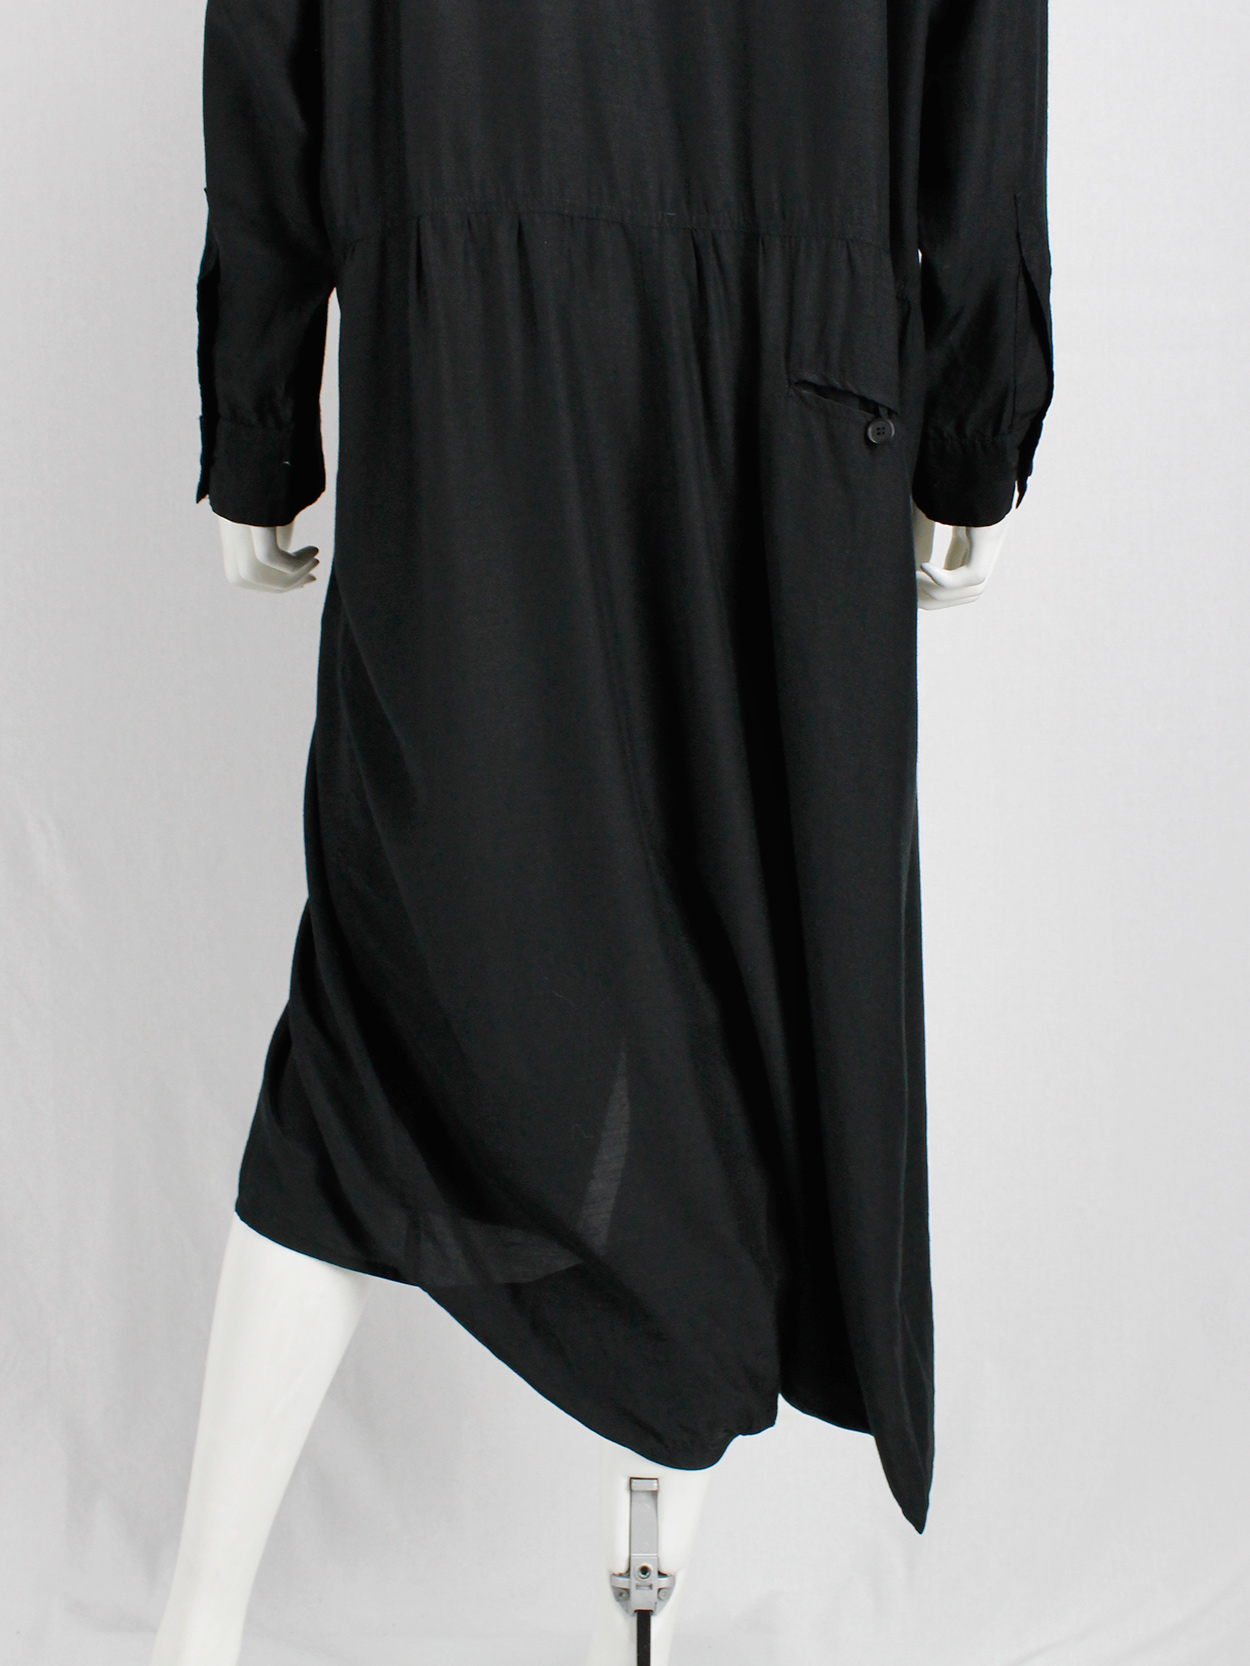 Ys Yohji Yamamoto black loose shirtdress with lapels 1980s (13)